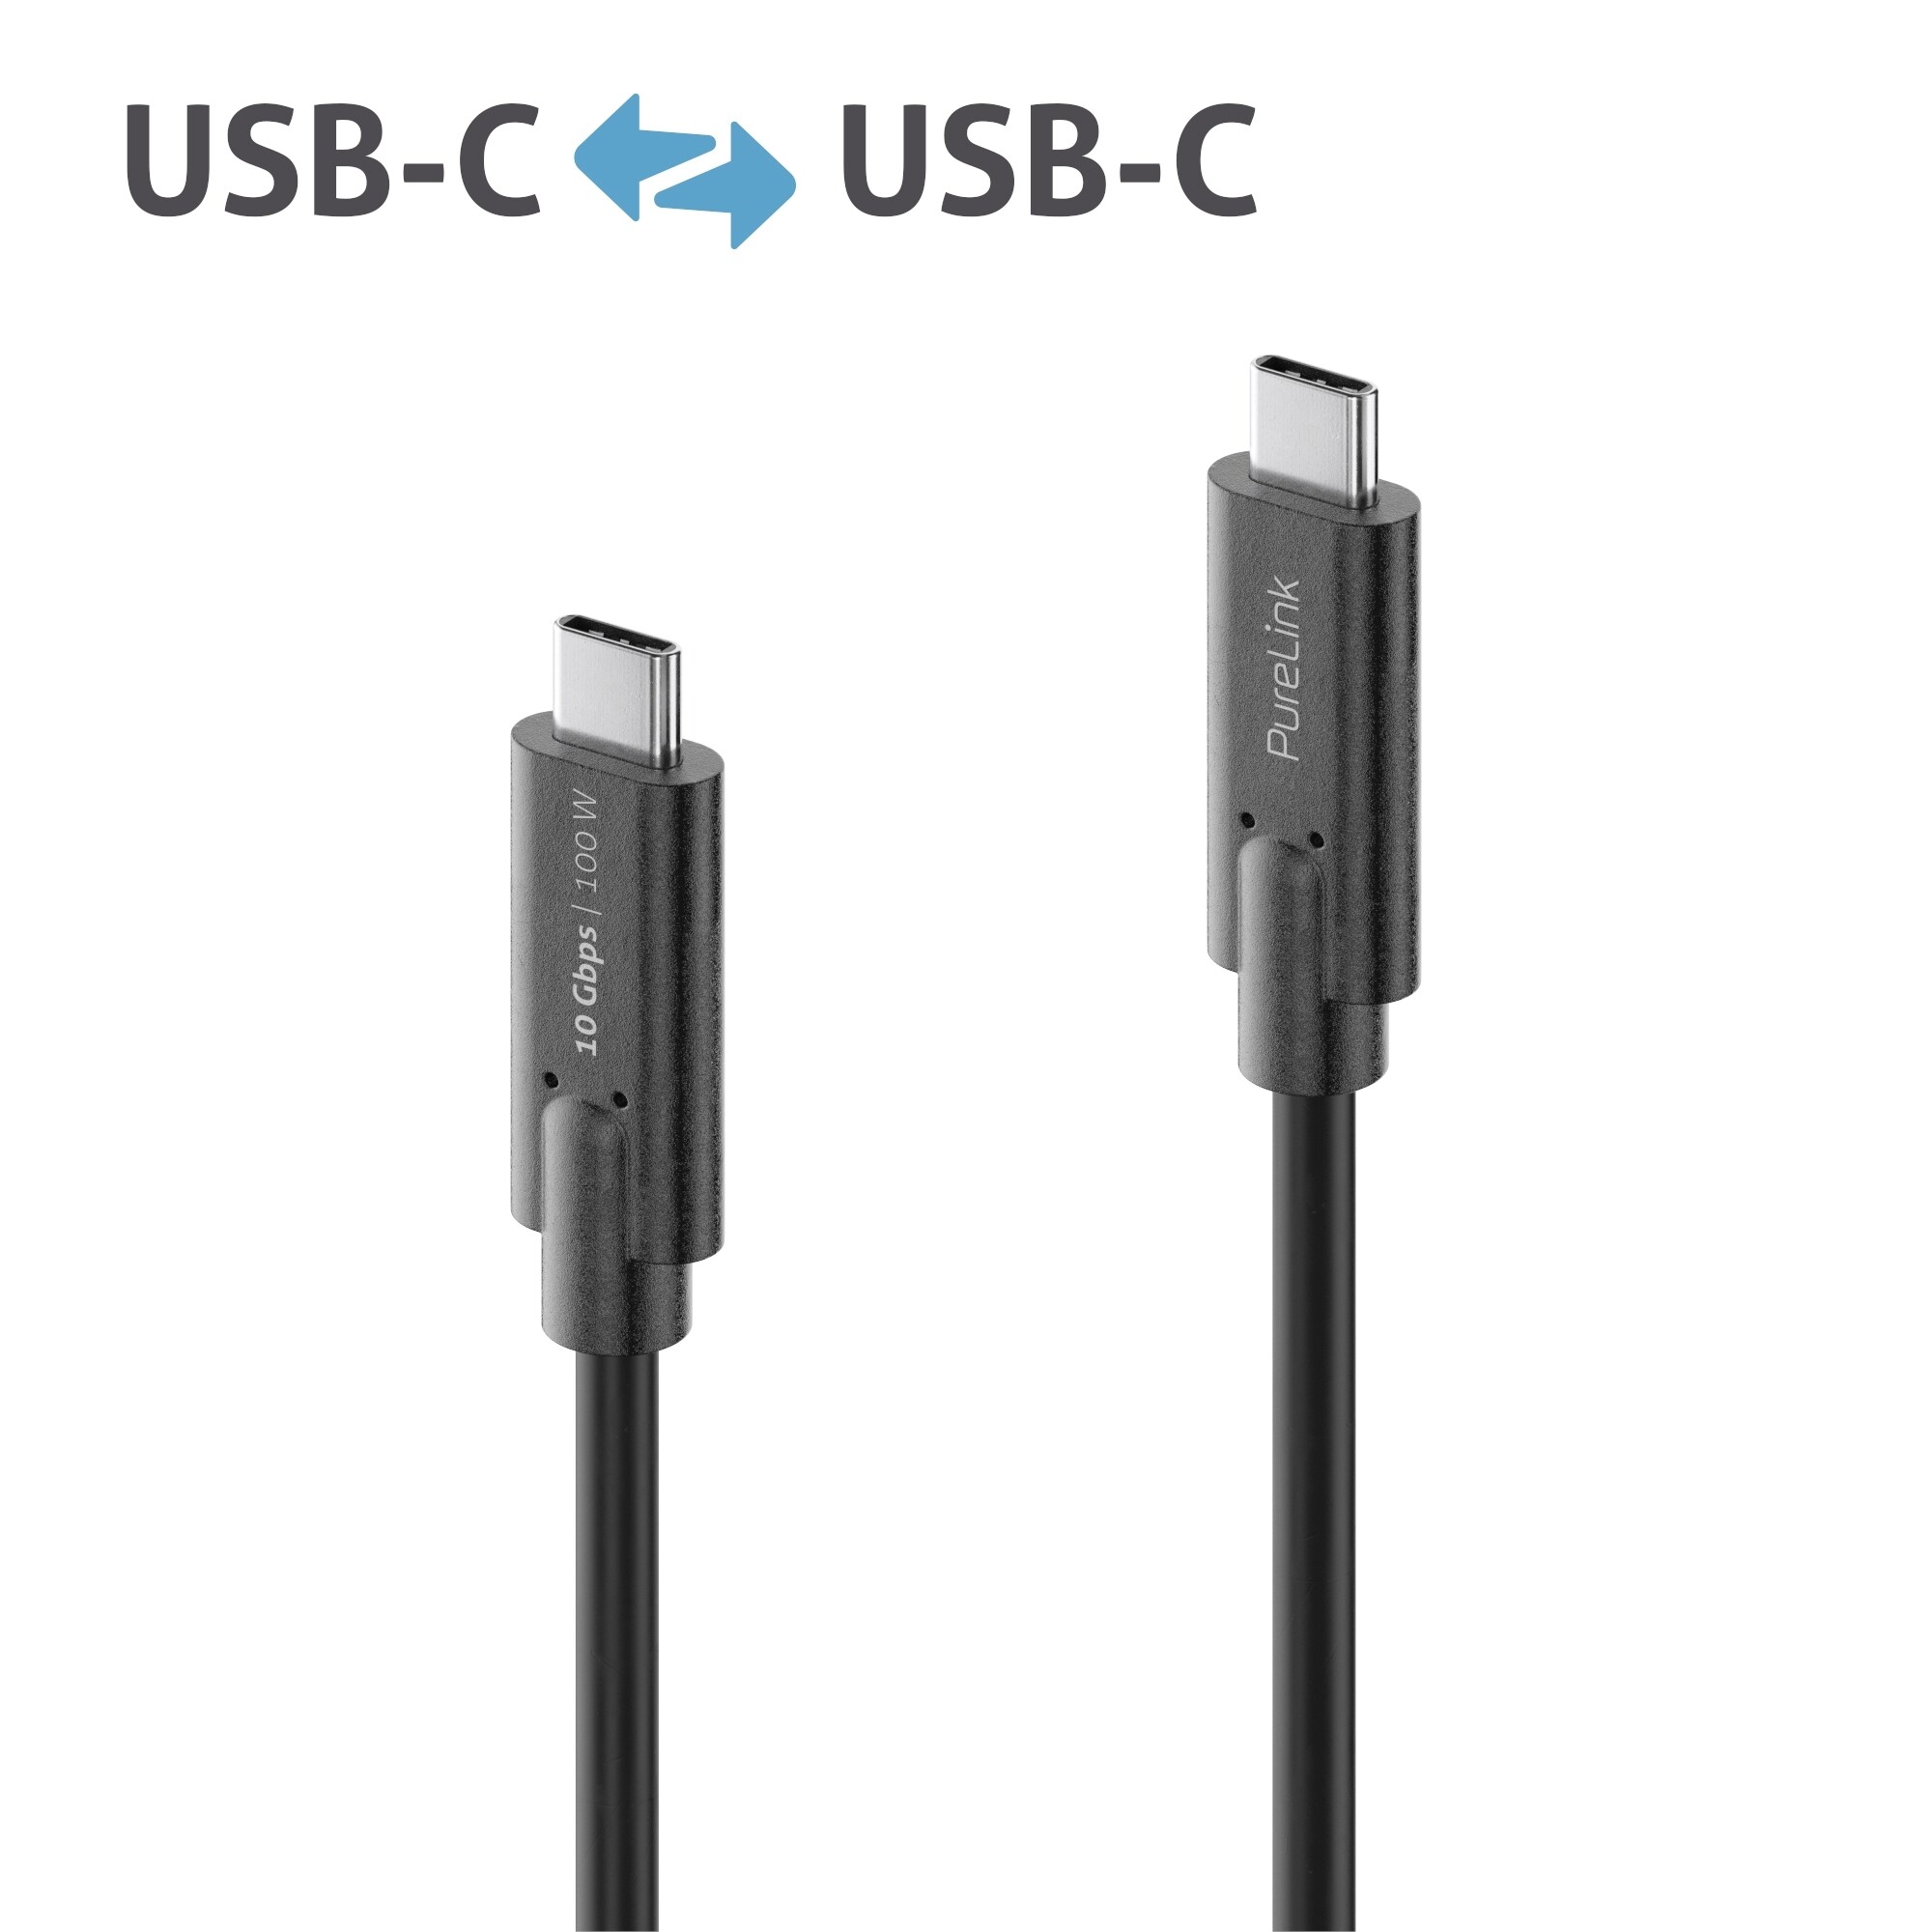 Purelink-IS2511-005-USB-C-auf-USB-C-Gen-2-Kabel-0-5m-schwarz